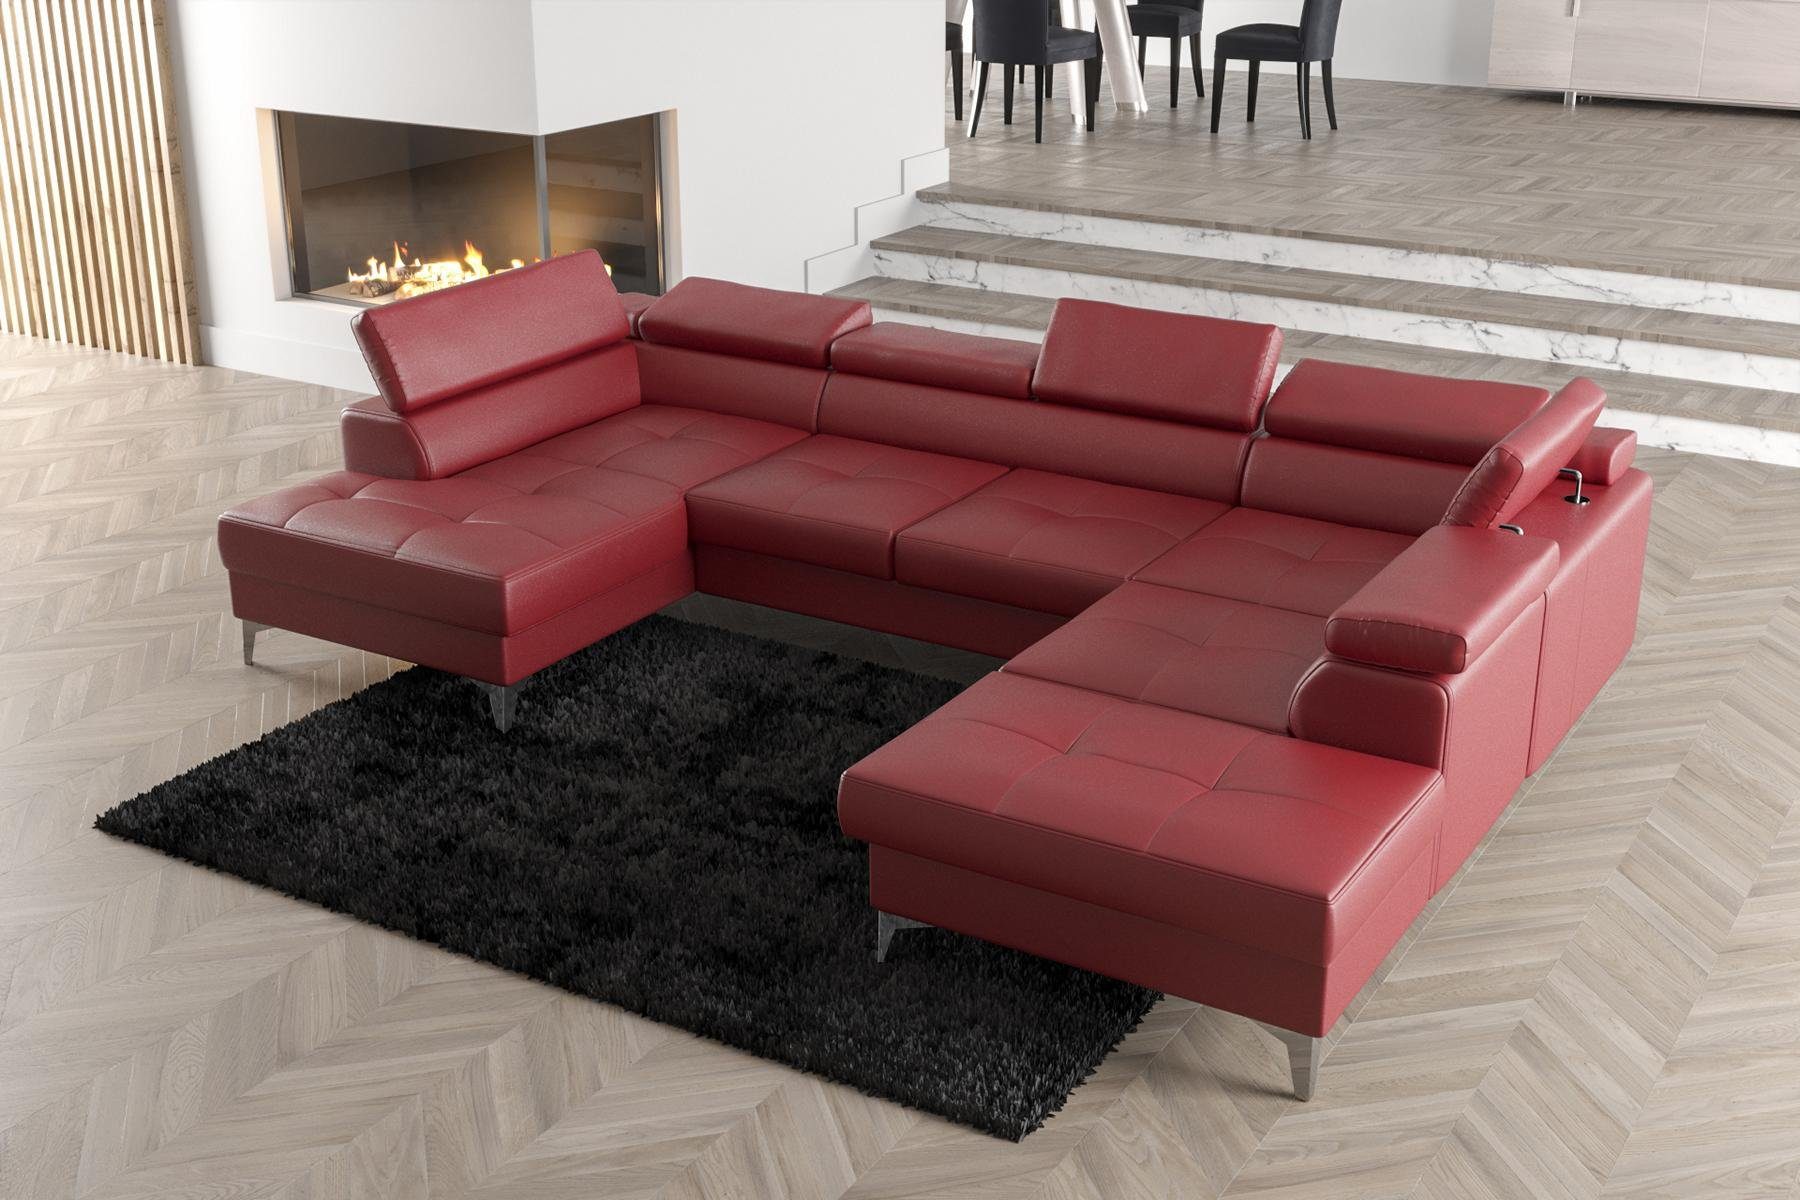 JVmoebel Ecksofa Modernes Design Polsterung Couch Wohnzimmer Ecksofa U-Form, Made in Europe Karminrot